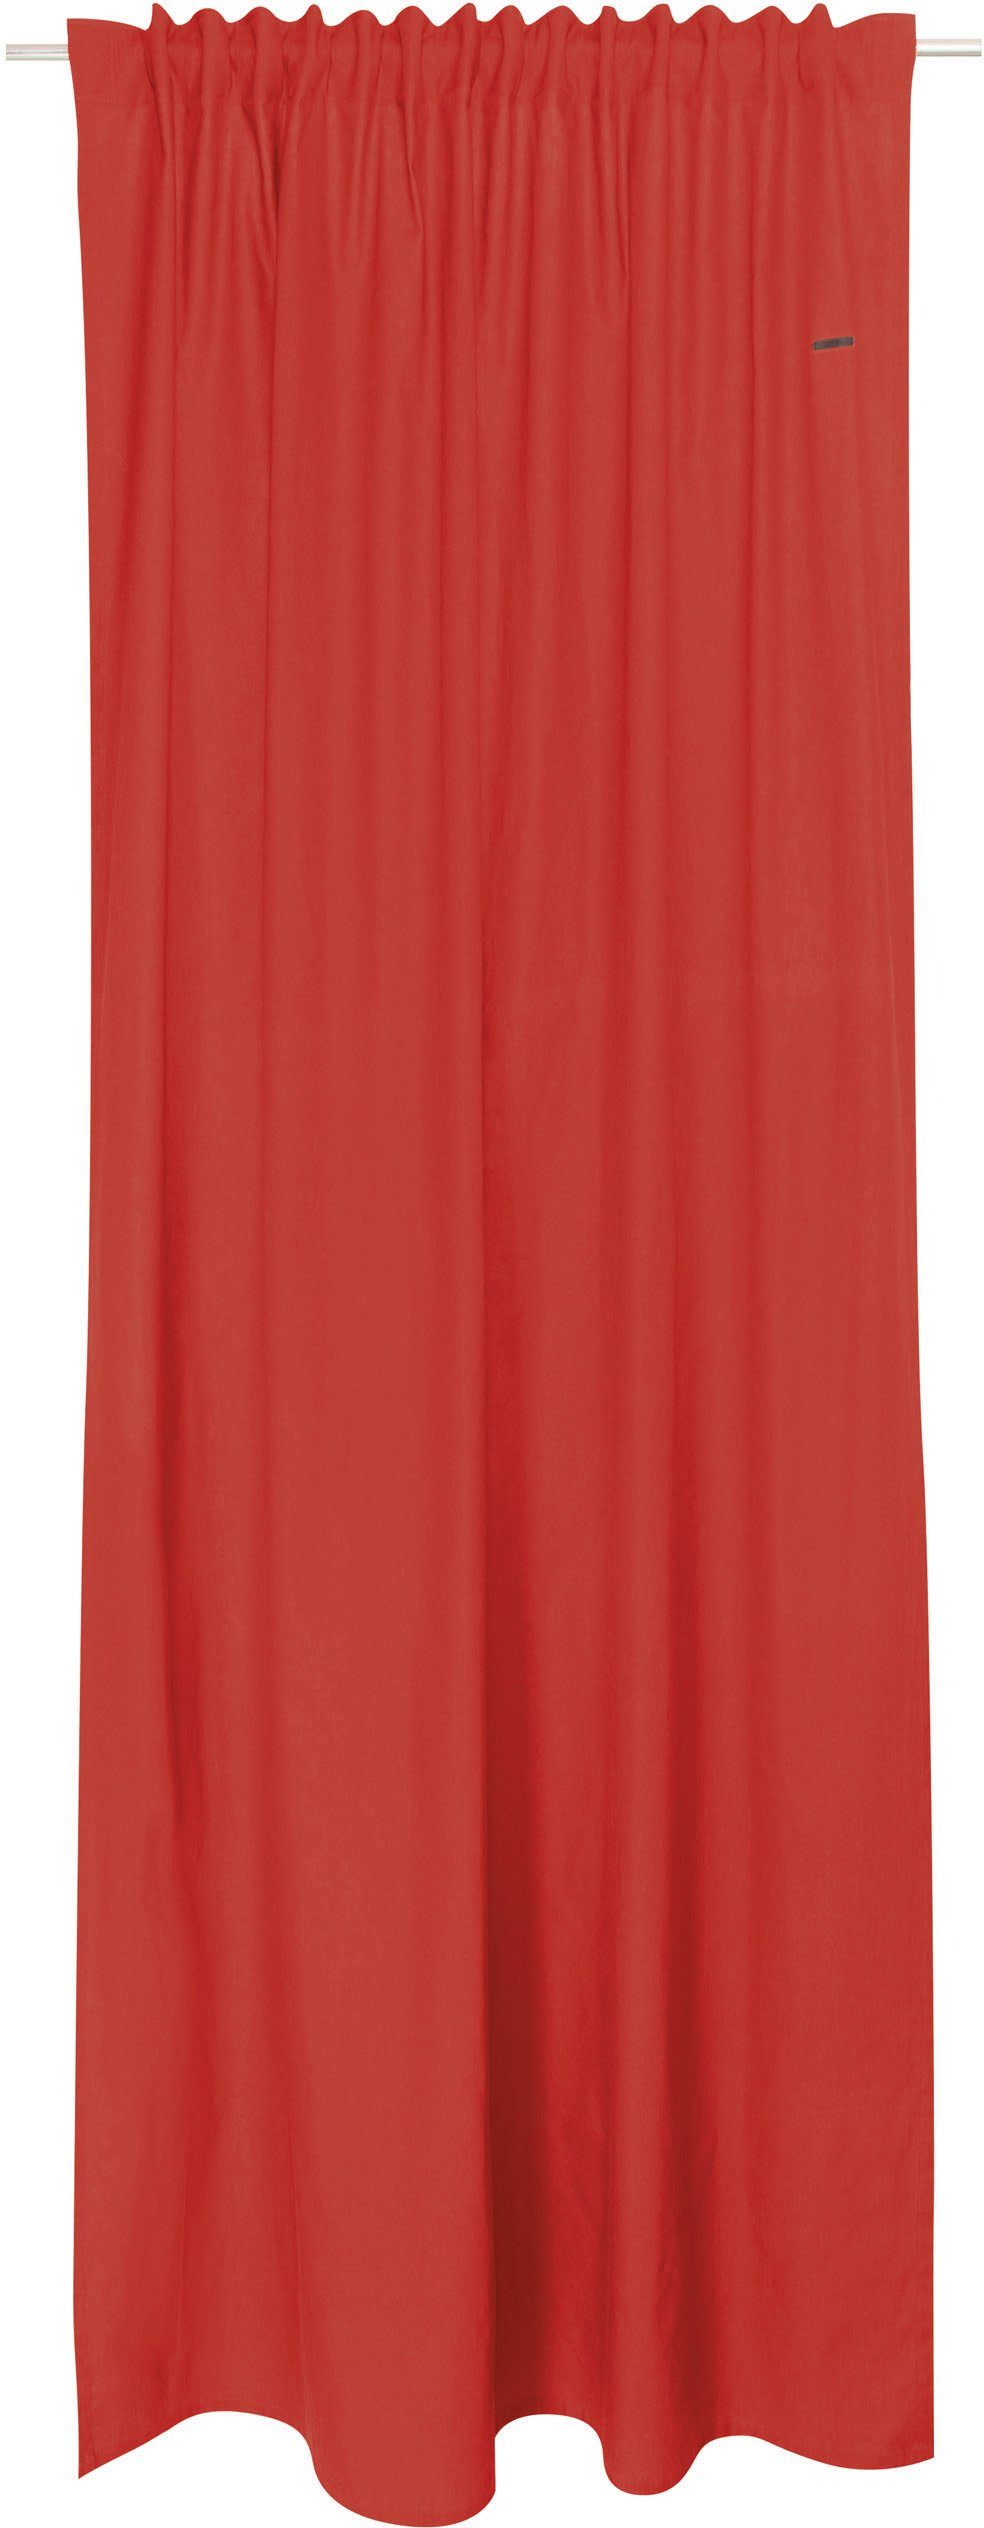 Vorhang Neo, Esprit, verdeckte Schlaufen (1 Baumwolle, blickdicht aus rot/rostrot/rost nachhaltiger St), blickdicht